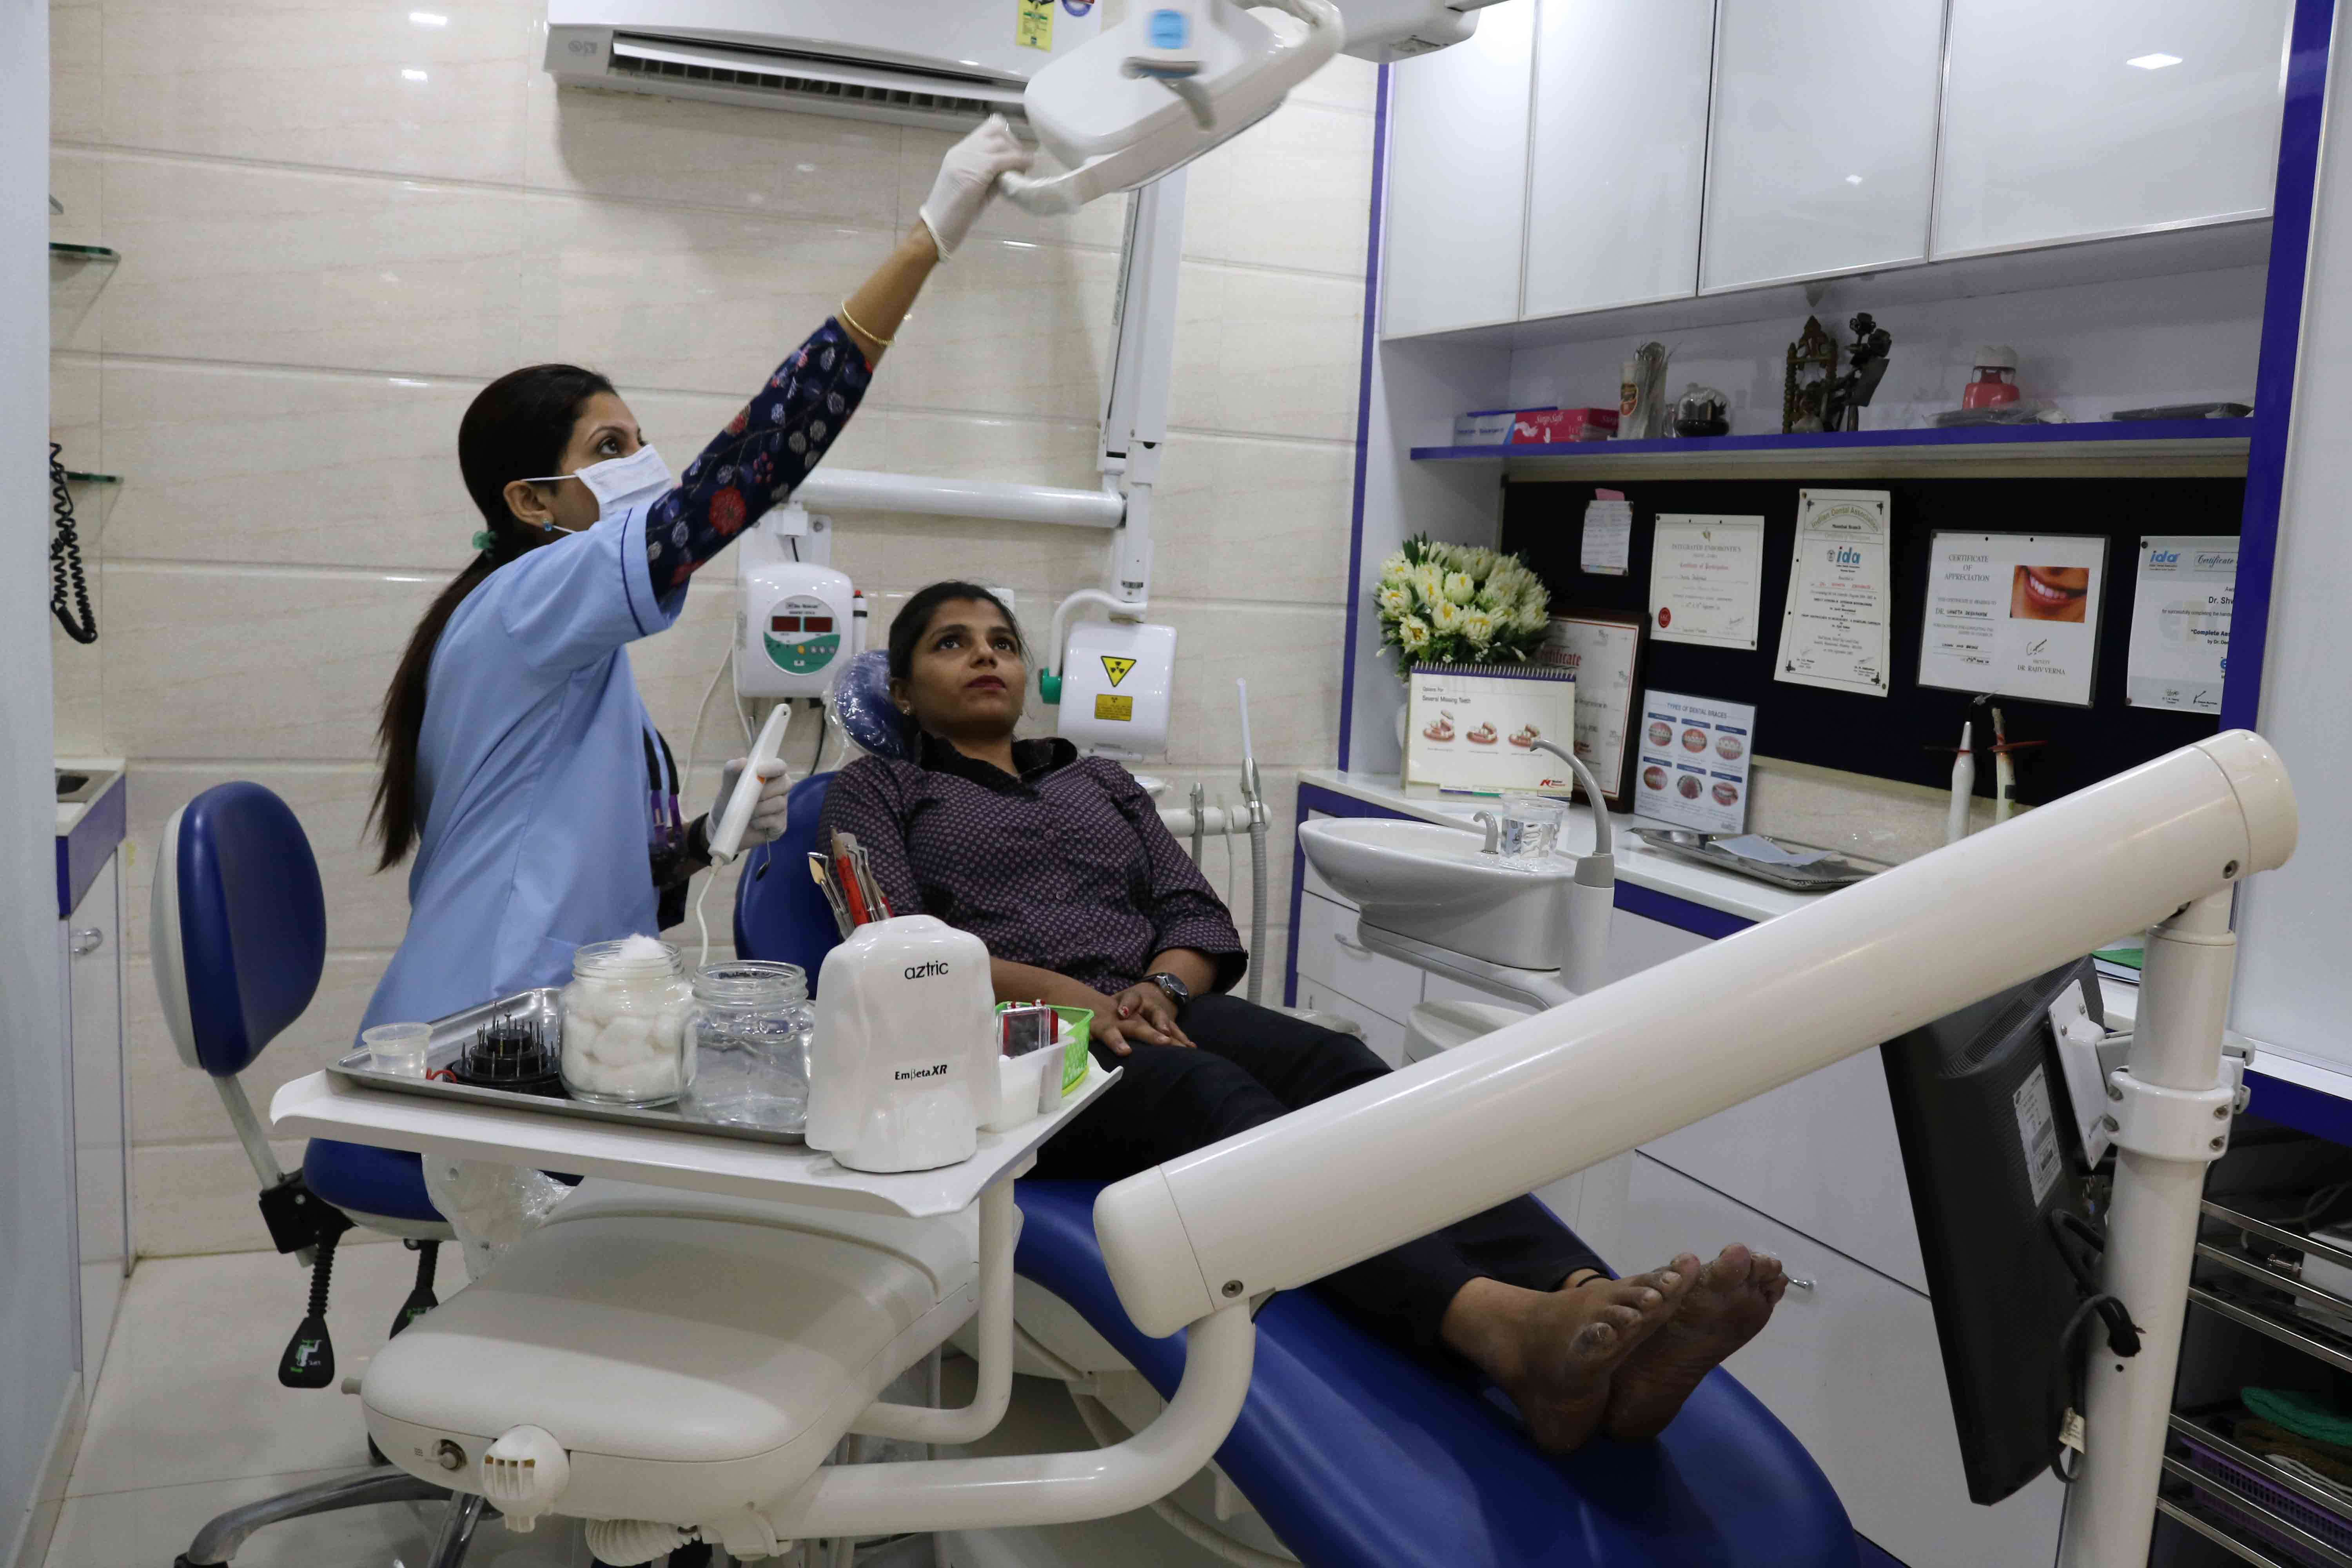 Kher Dental Clinic